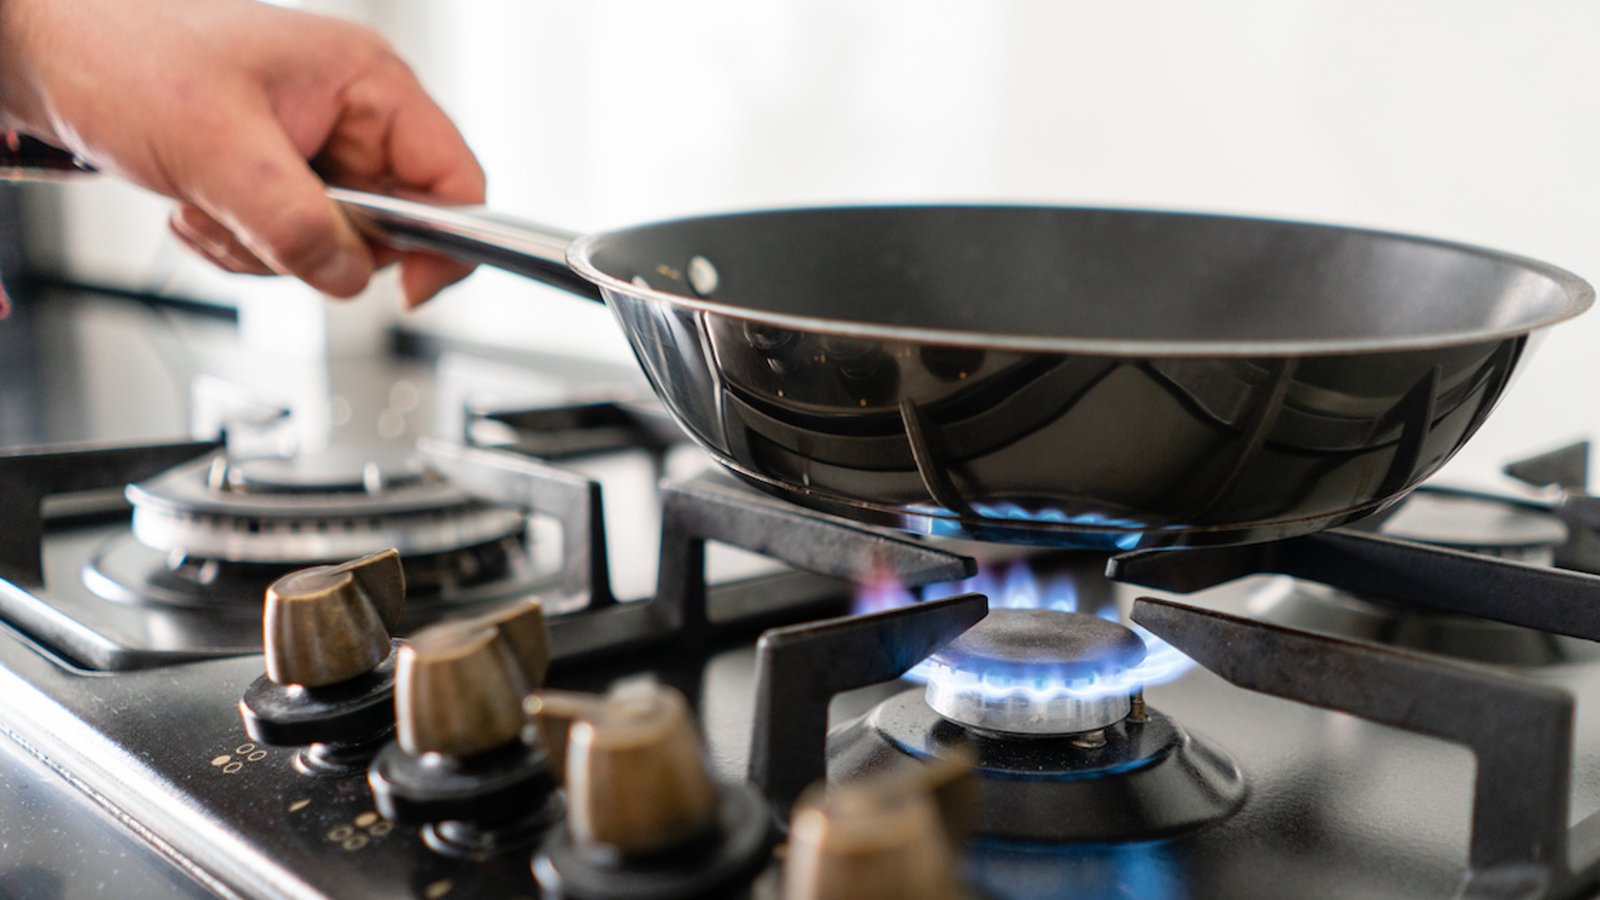 Les cuisinières au gaz sont dangereuses pour la santé